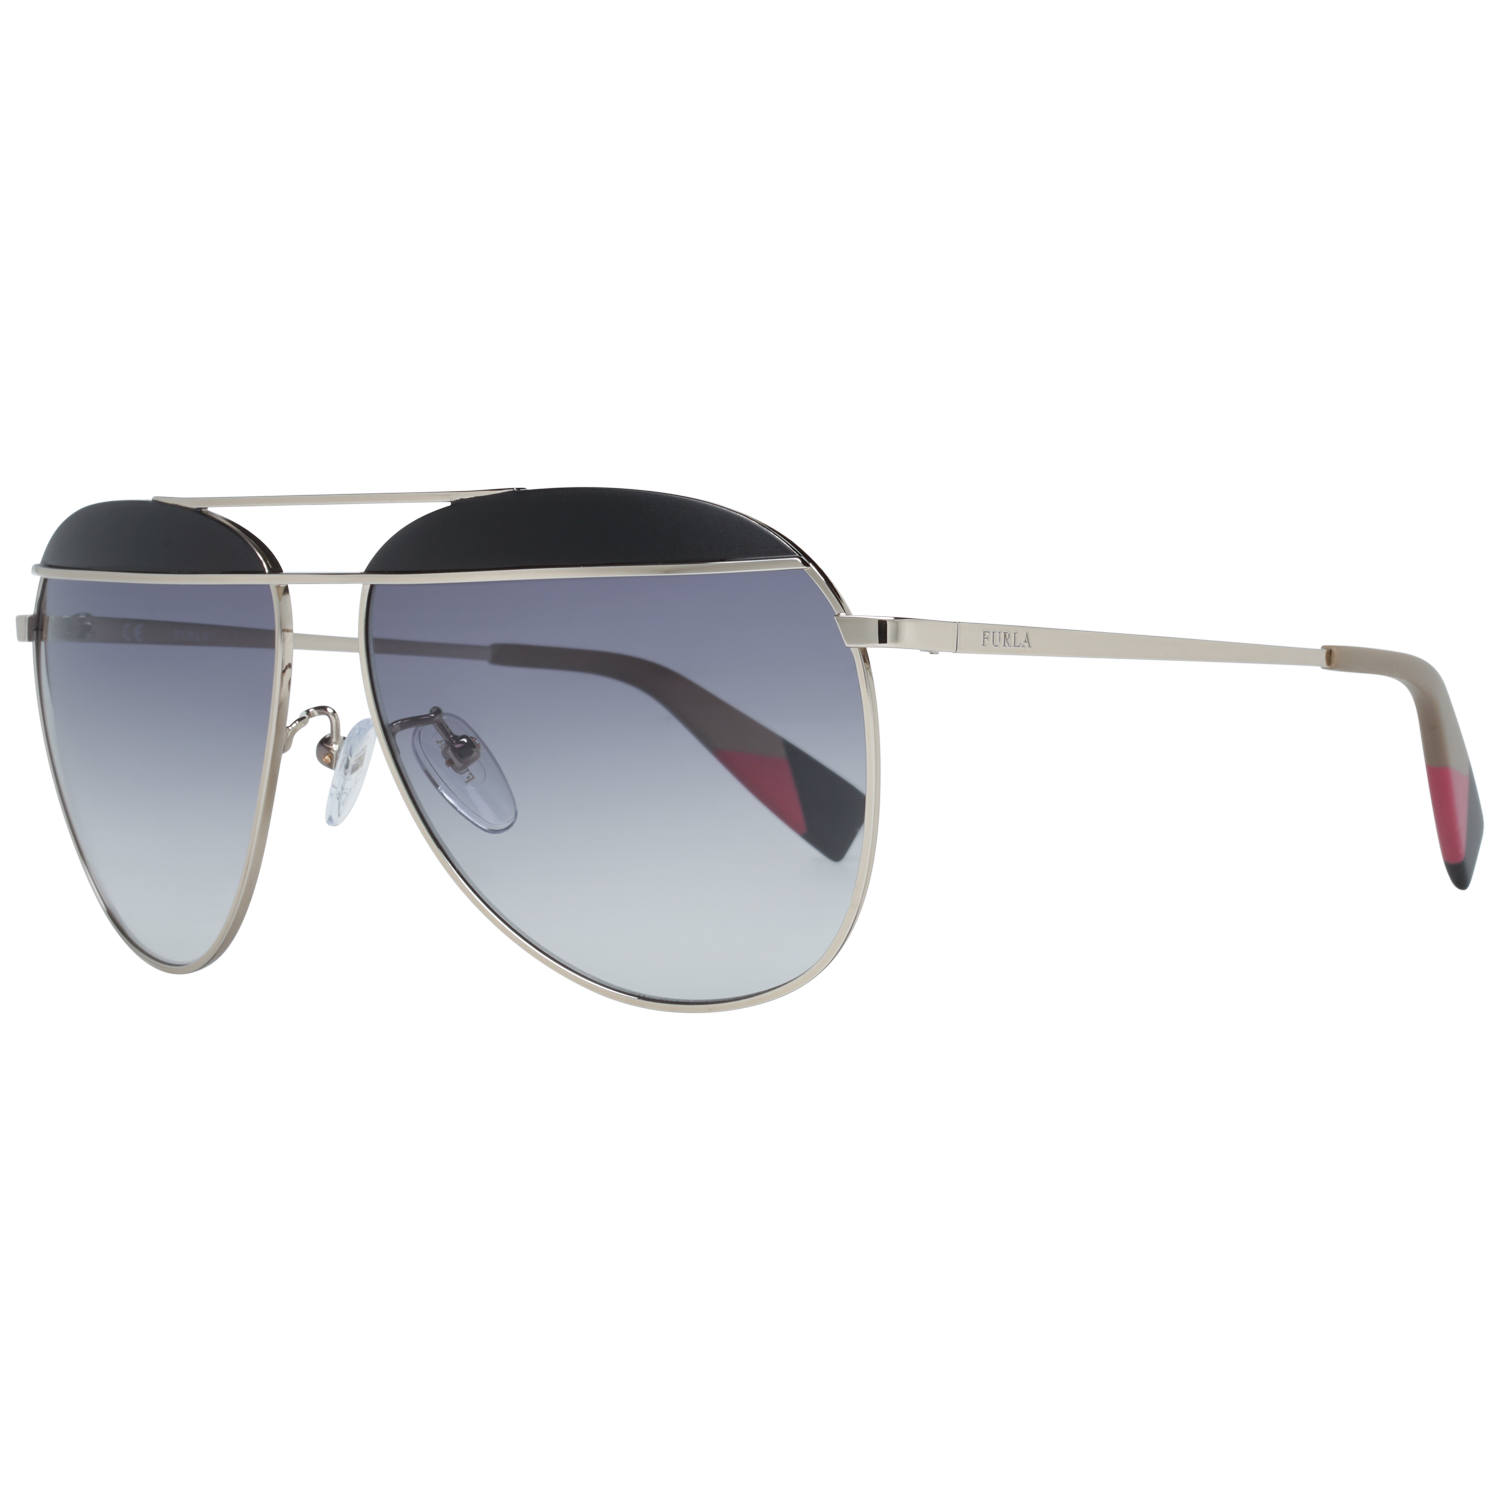 Furla Sunglasses SFU236 0492 59 Silver